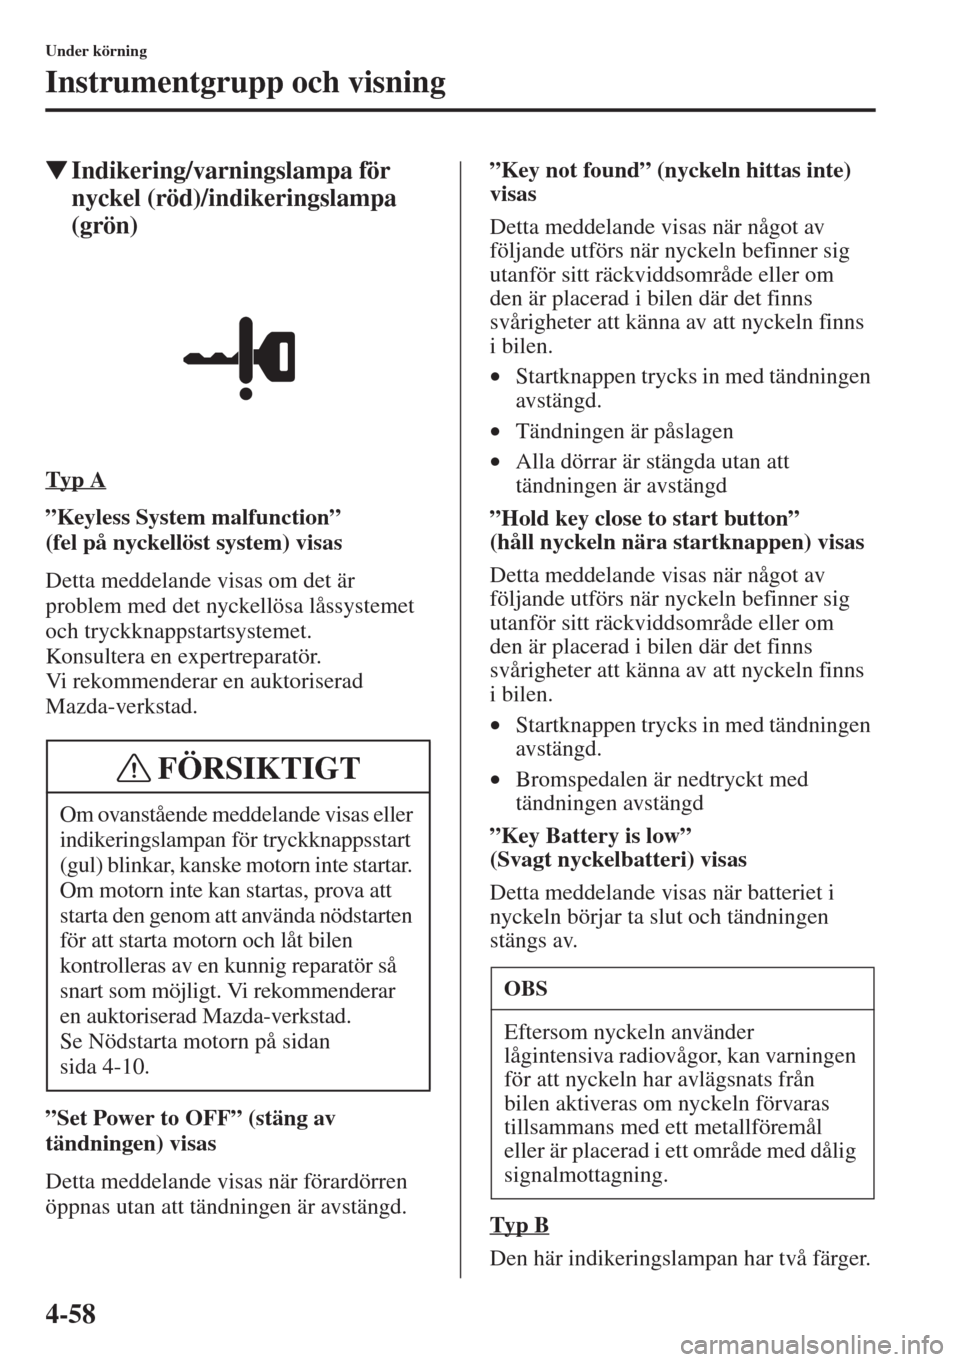 MAZDA MODEL CX-5 2015  Ägarmanual (in Swedish) 4-58
Under körning
Instrumentgrupp och visning
�WIndikering/varningslampa för 
nyckel (röd)/indikeringslampa 
(grön)
Typ A
”Keyless System malfunction” 
(felpånyckellöst system) visas
Detta 